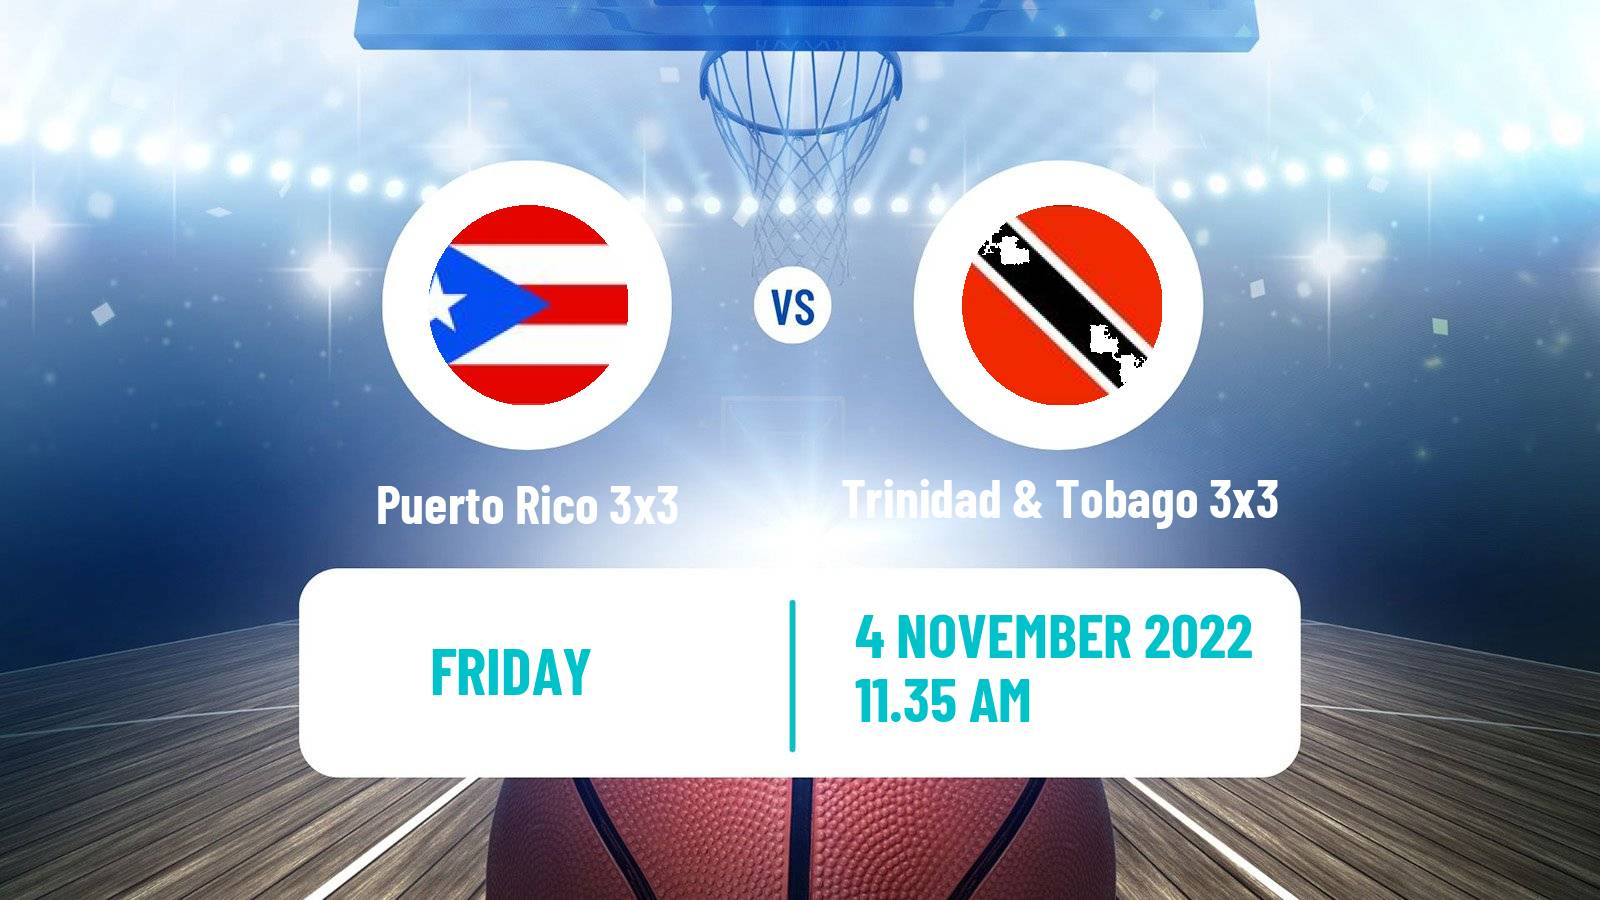 Basketball Americup 3x3 Puerto Rico 3x3 - Trinidad & Tobago 3x3